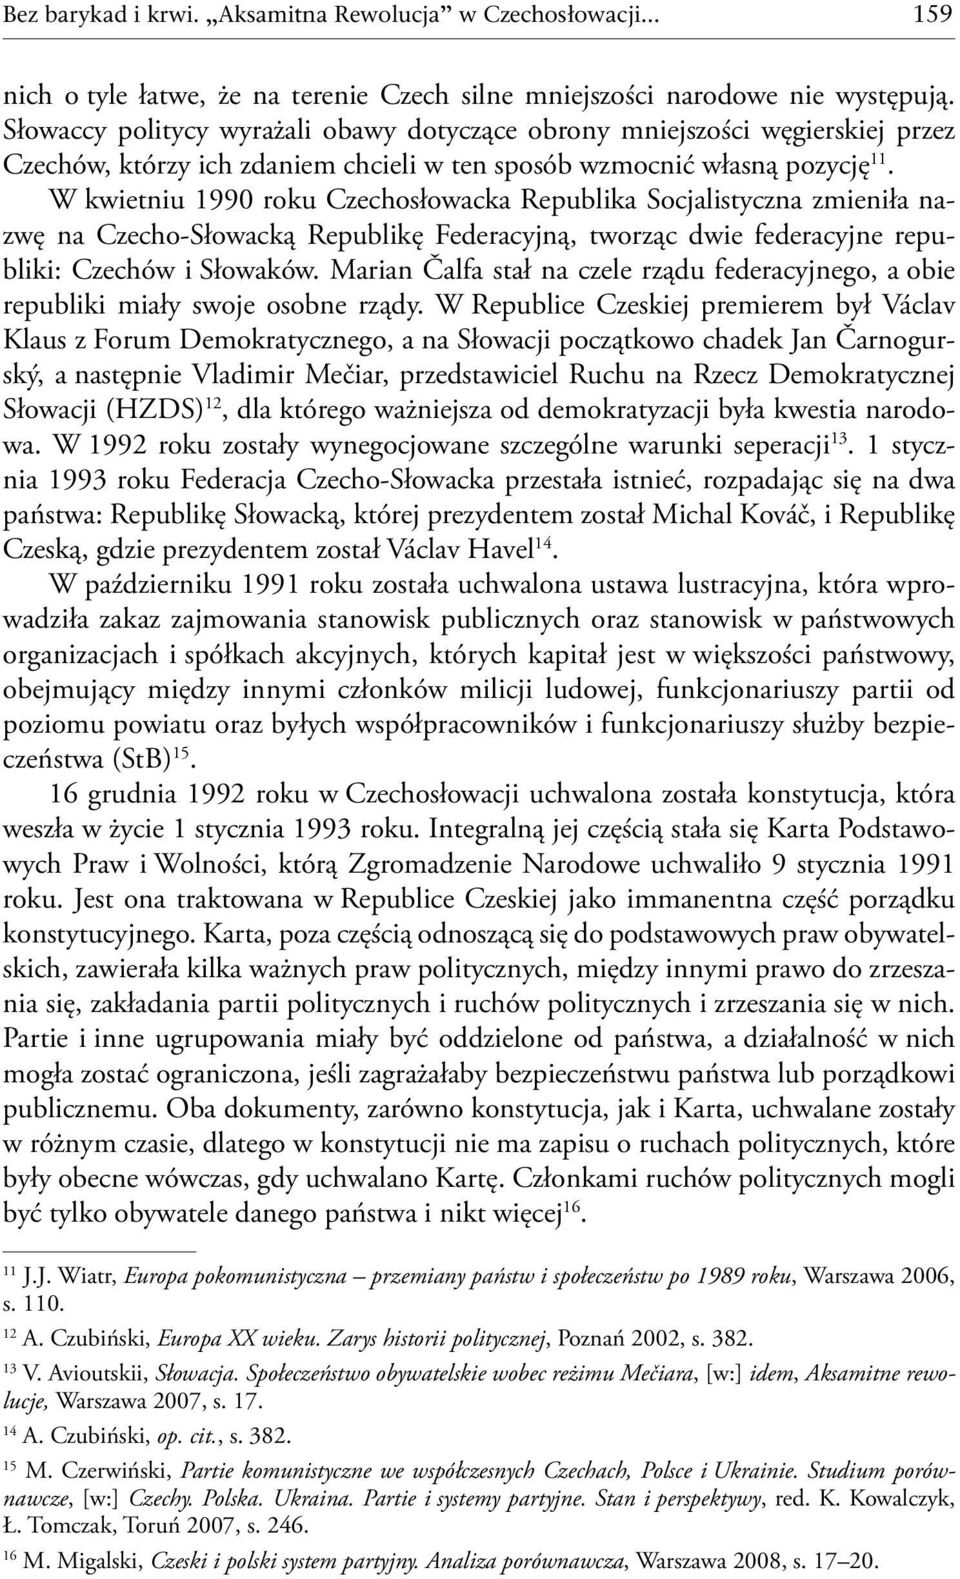 W kwietniu 1990 roku Czechosłowacka Republika Socjalistyczna zmieniła nazwę na Czecho-Słowacką Republikę Federacyjną, tworząc dwie federacyjne republiki: Czechów i Słowaków.